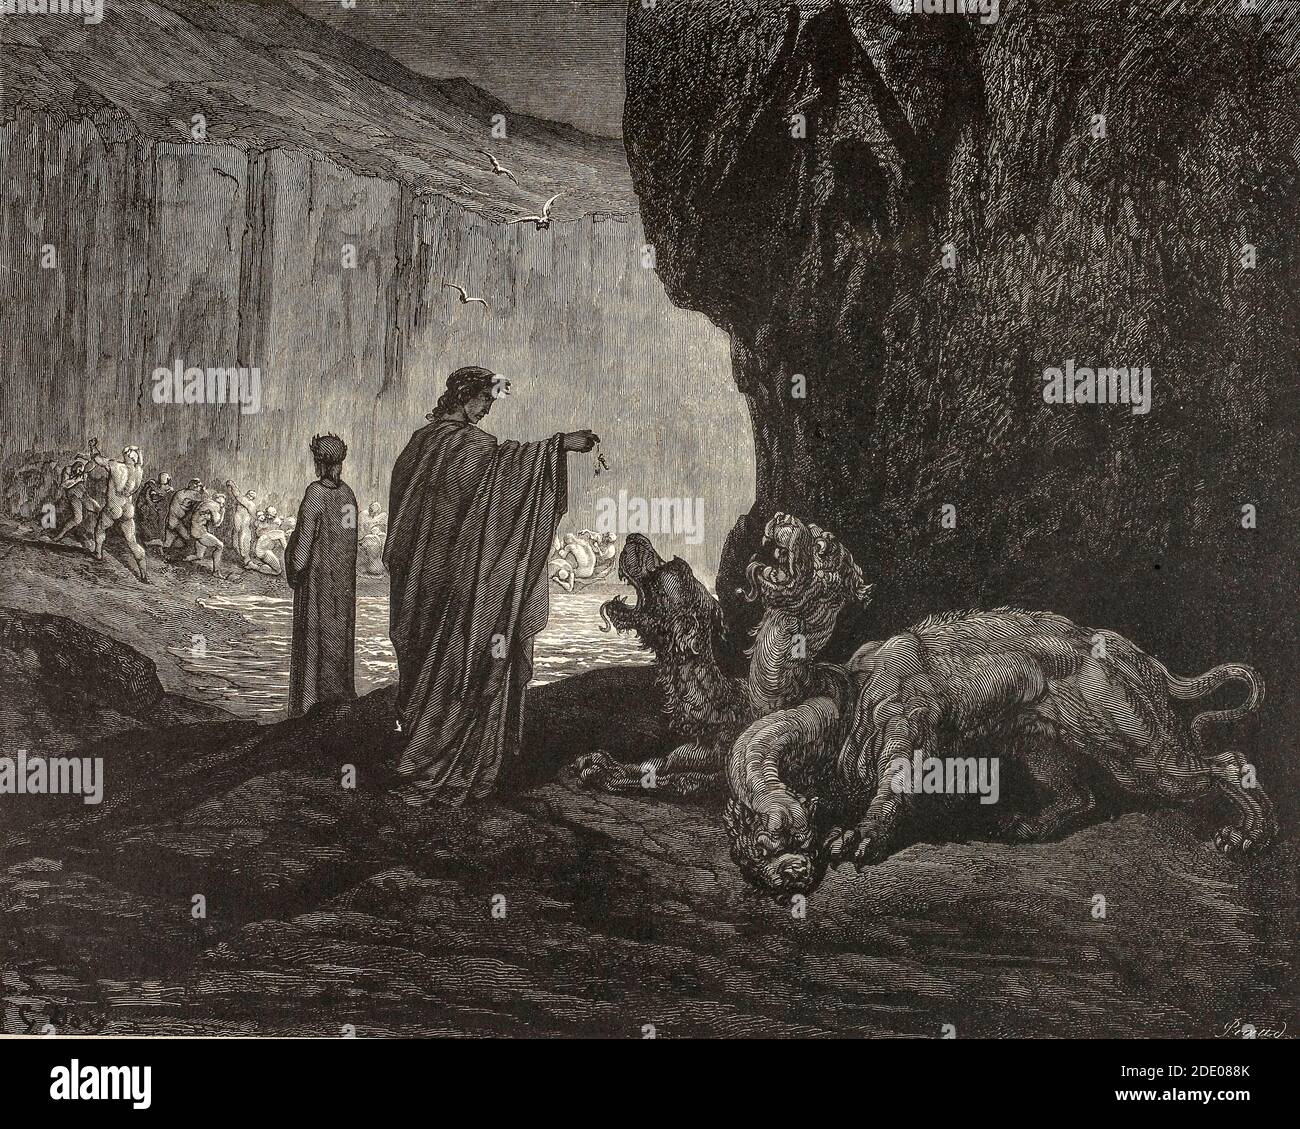 Dante Divina Commedia - Infierno - Dante se encuentra con Cerberus, un personaje de la mitología griega, uno de los monstruos que custodian la entrada al inframundo sobre el que reinó el dios Hades - Canto VI - ilustración de Gustave Dorè Foto de stock